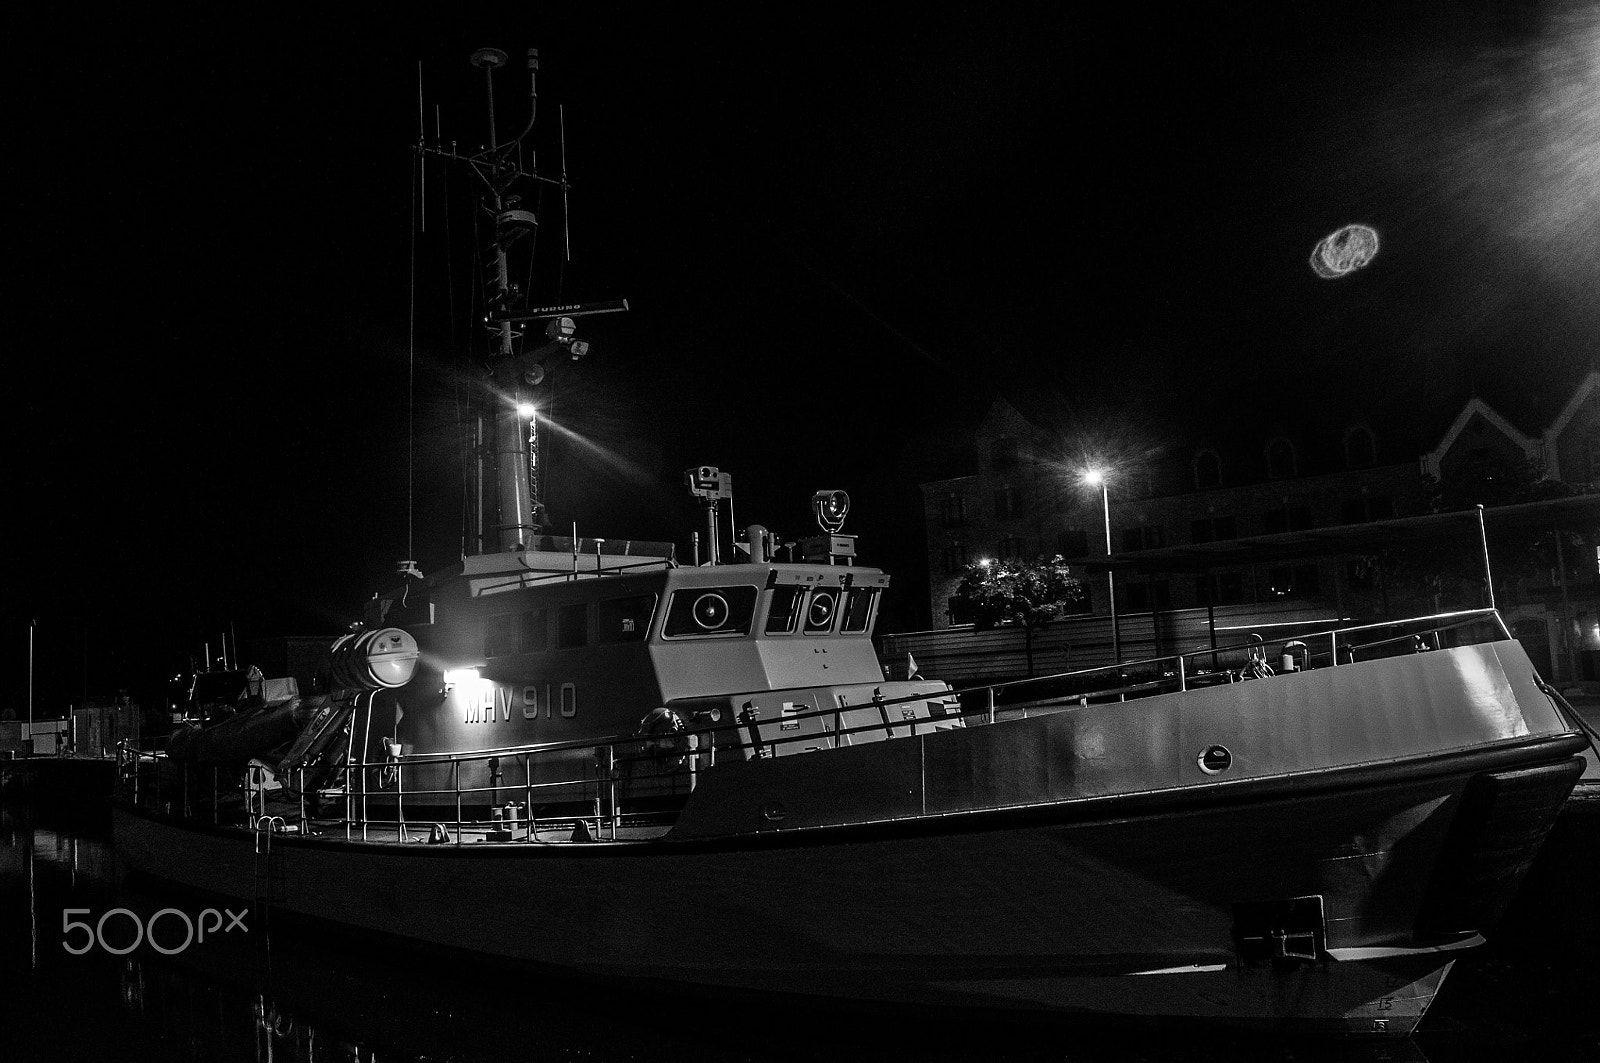 Nikon D300 + Nikon AF-S DX Nikkor 18-55mm F3.5-5.6G VR II sample photo. Danish marine ship photography